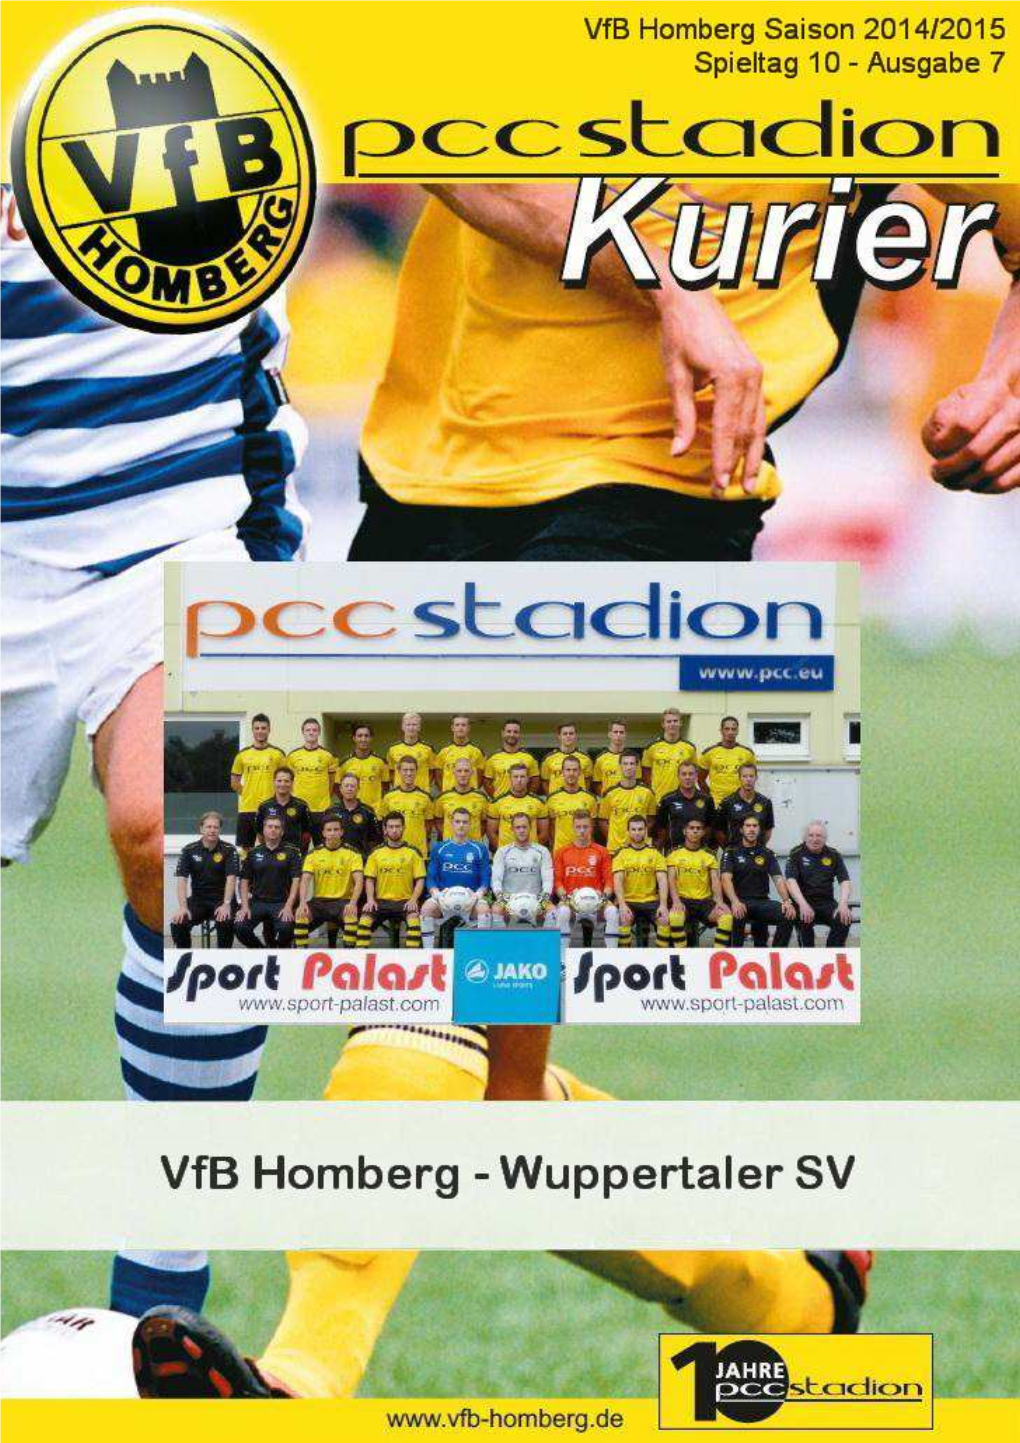 Vfb Homberg Kurier 20142015 07 Hp.Pub